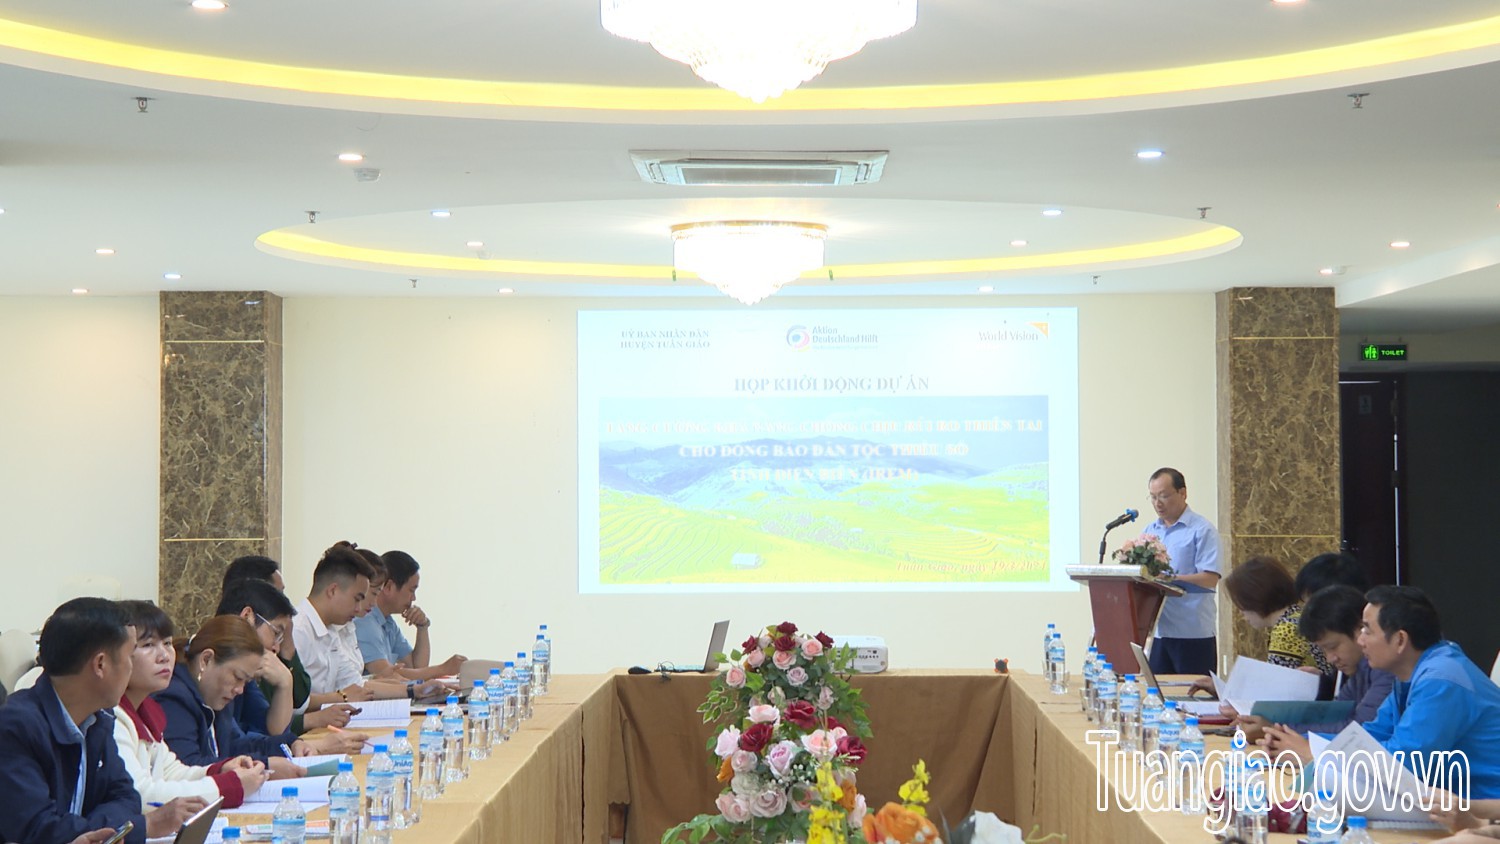 Tuần Giáo triển khai dự án “Tăng cường khả năng chống chịu rủi ro thiên tai cho đồng bào DTTS tỉnh Điện Biên” tại huyện Tuần Giáo